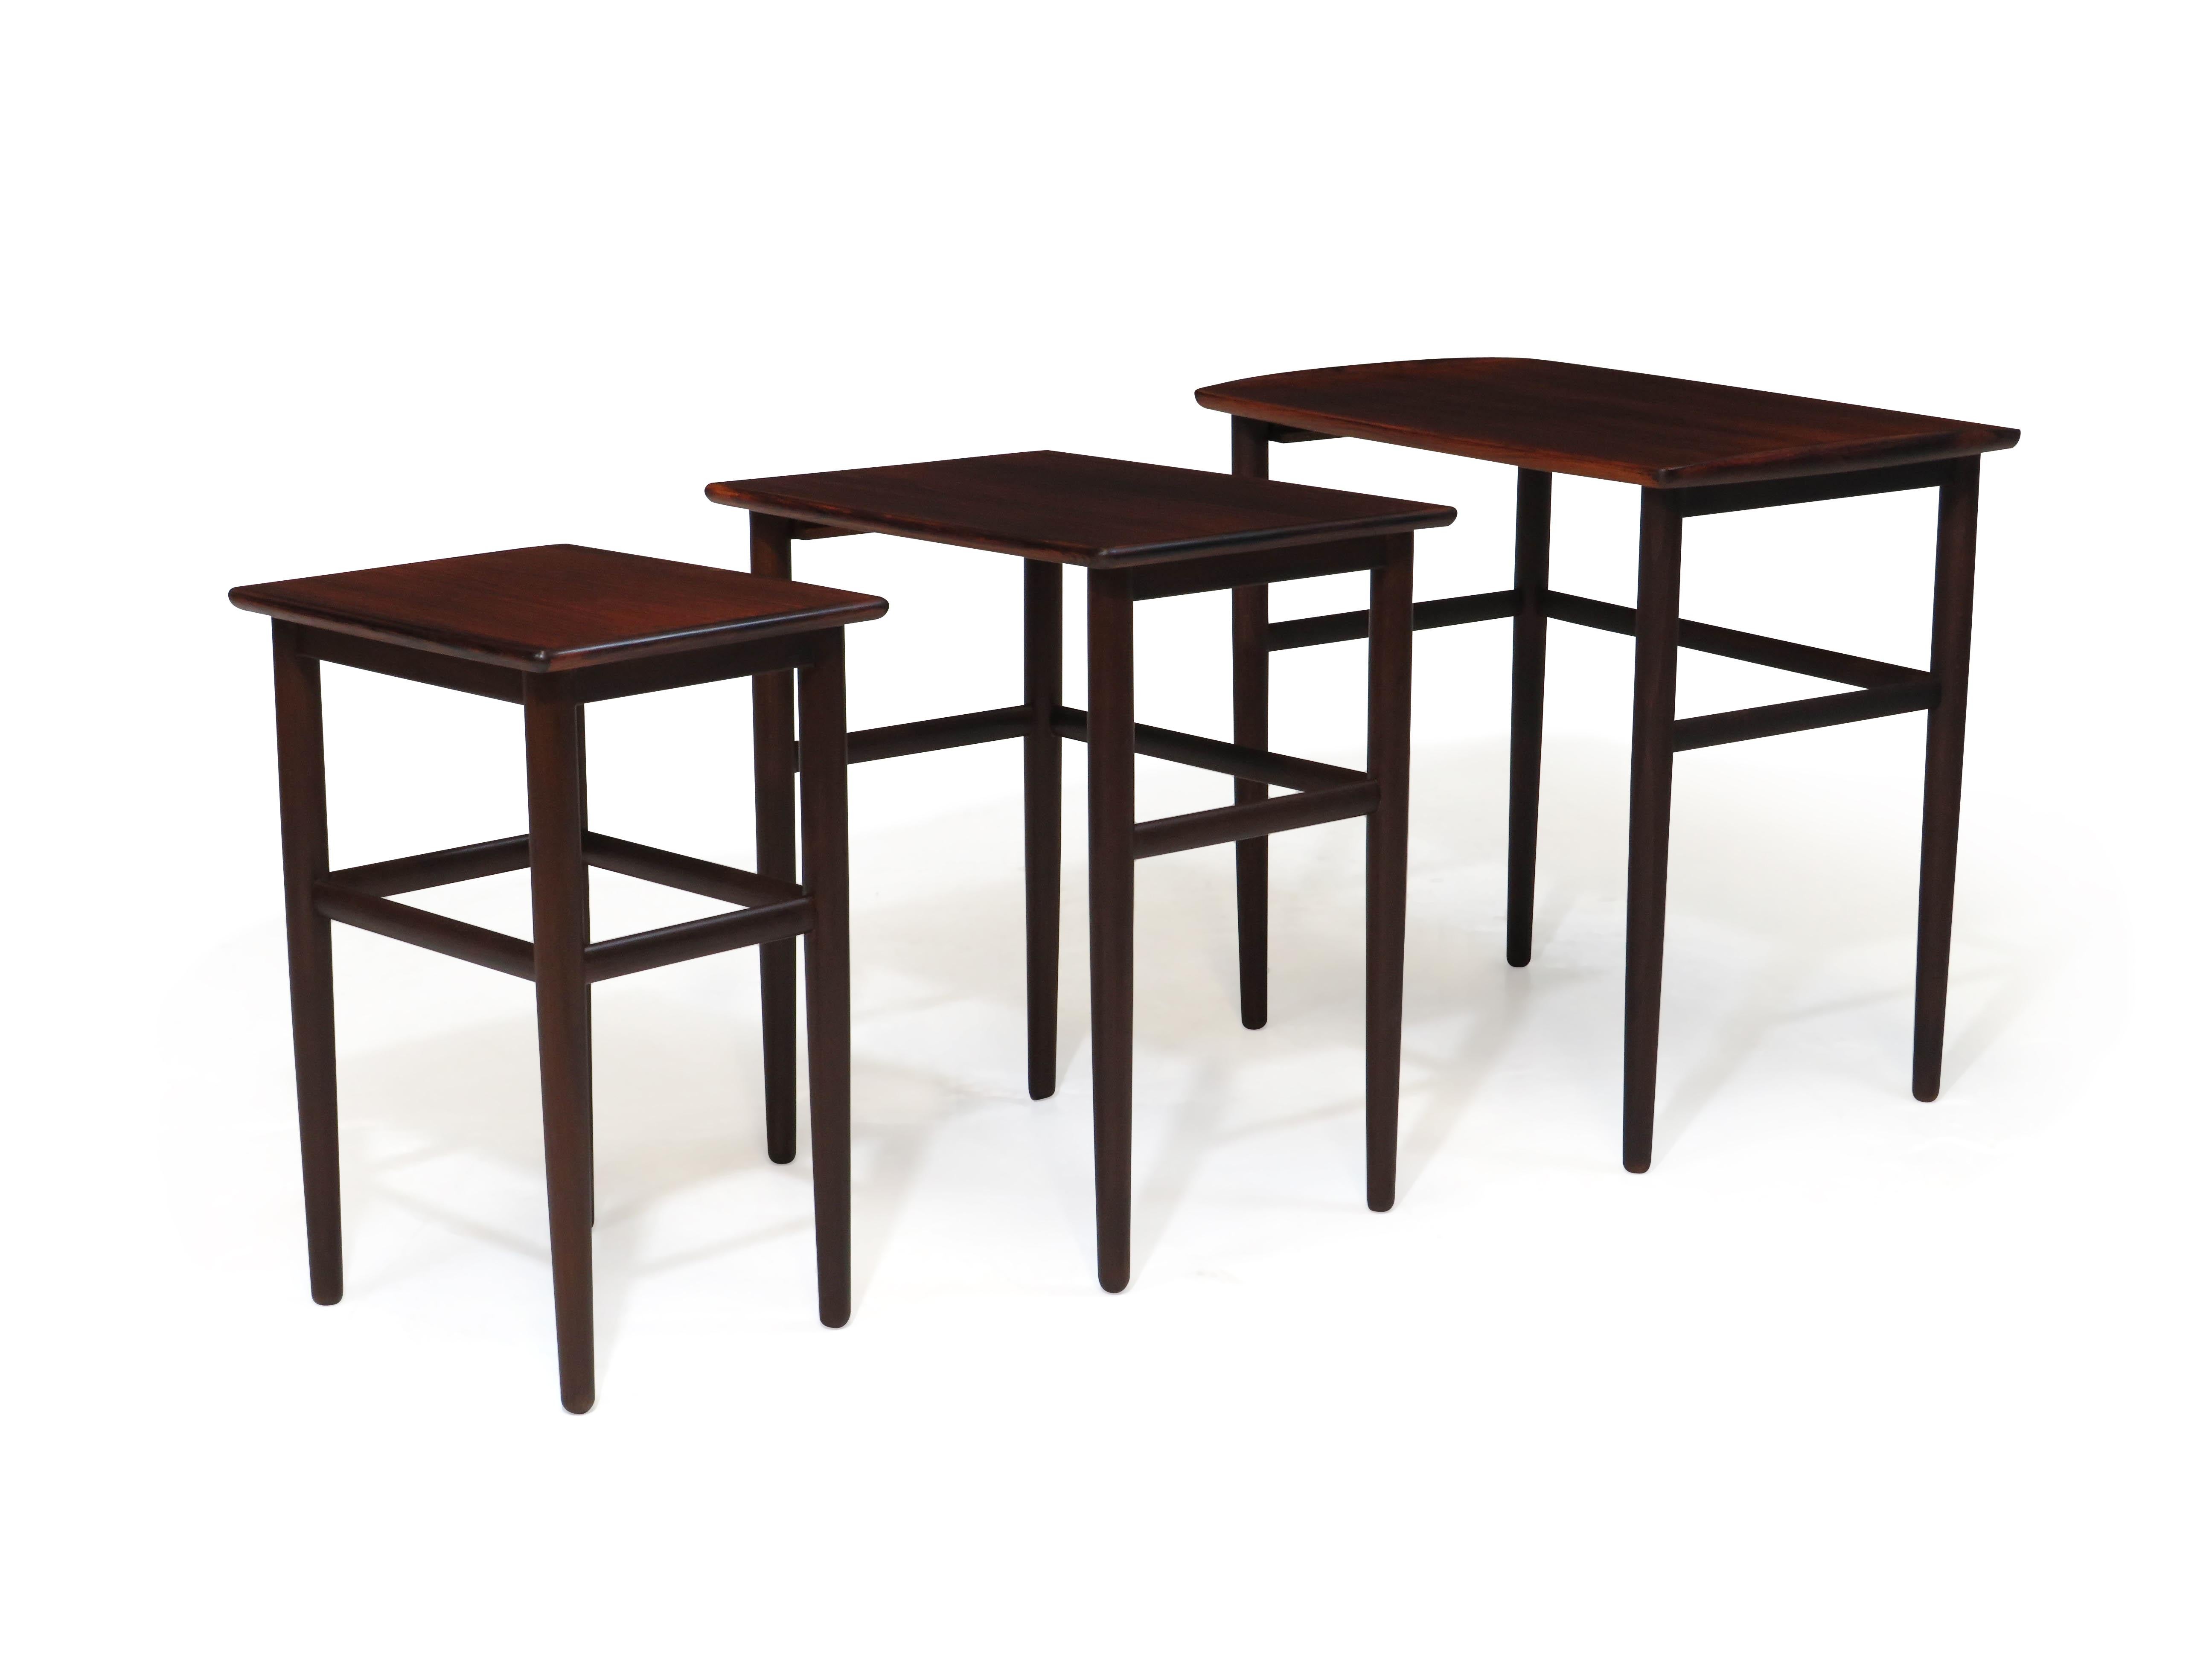 Ensemble de trois tables gigognes en bois de rose avec des pieds coniques et un design minimal. Flexibilité dans toutes les configurations pour répondre à vos besoins. Finement restauré et en excellent état avec des signes mineurs d'âge et